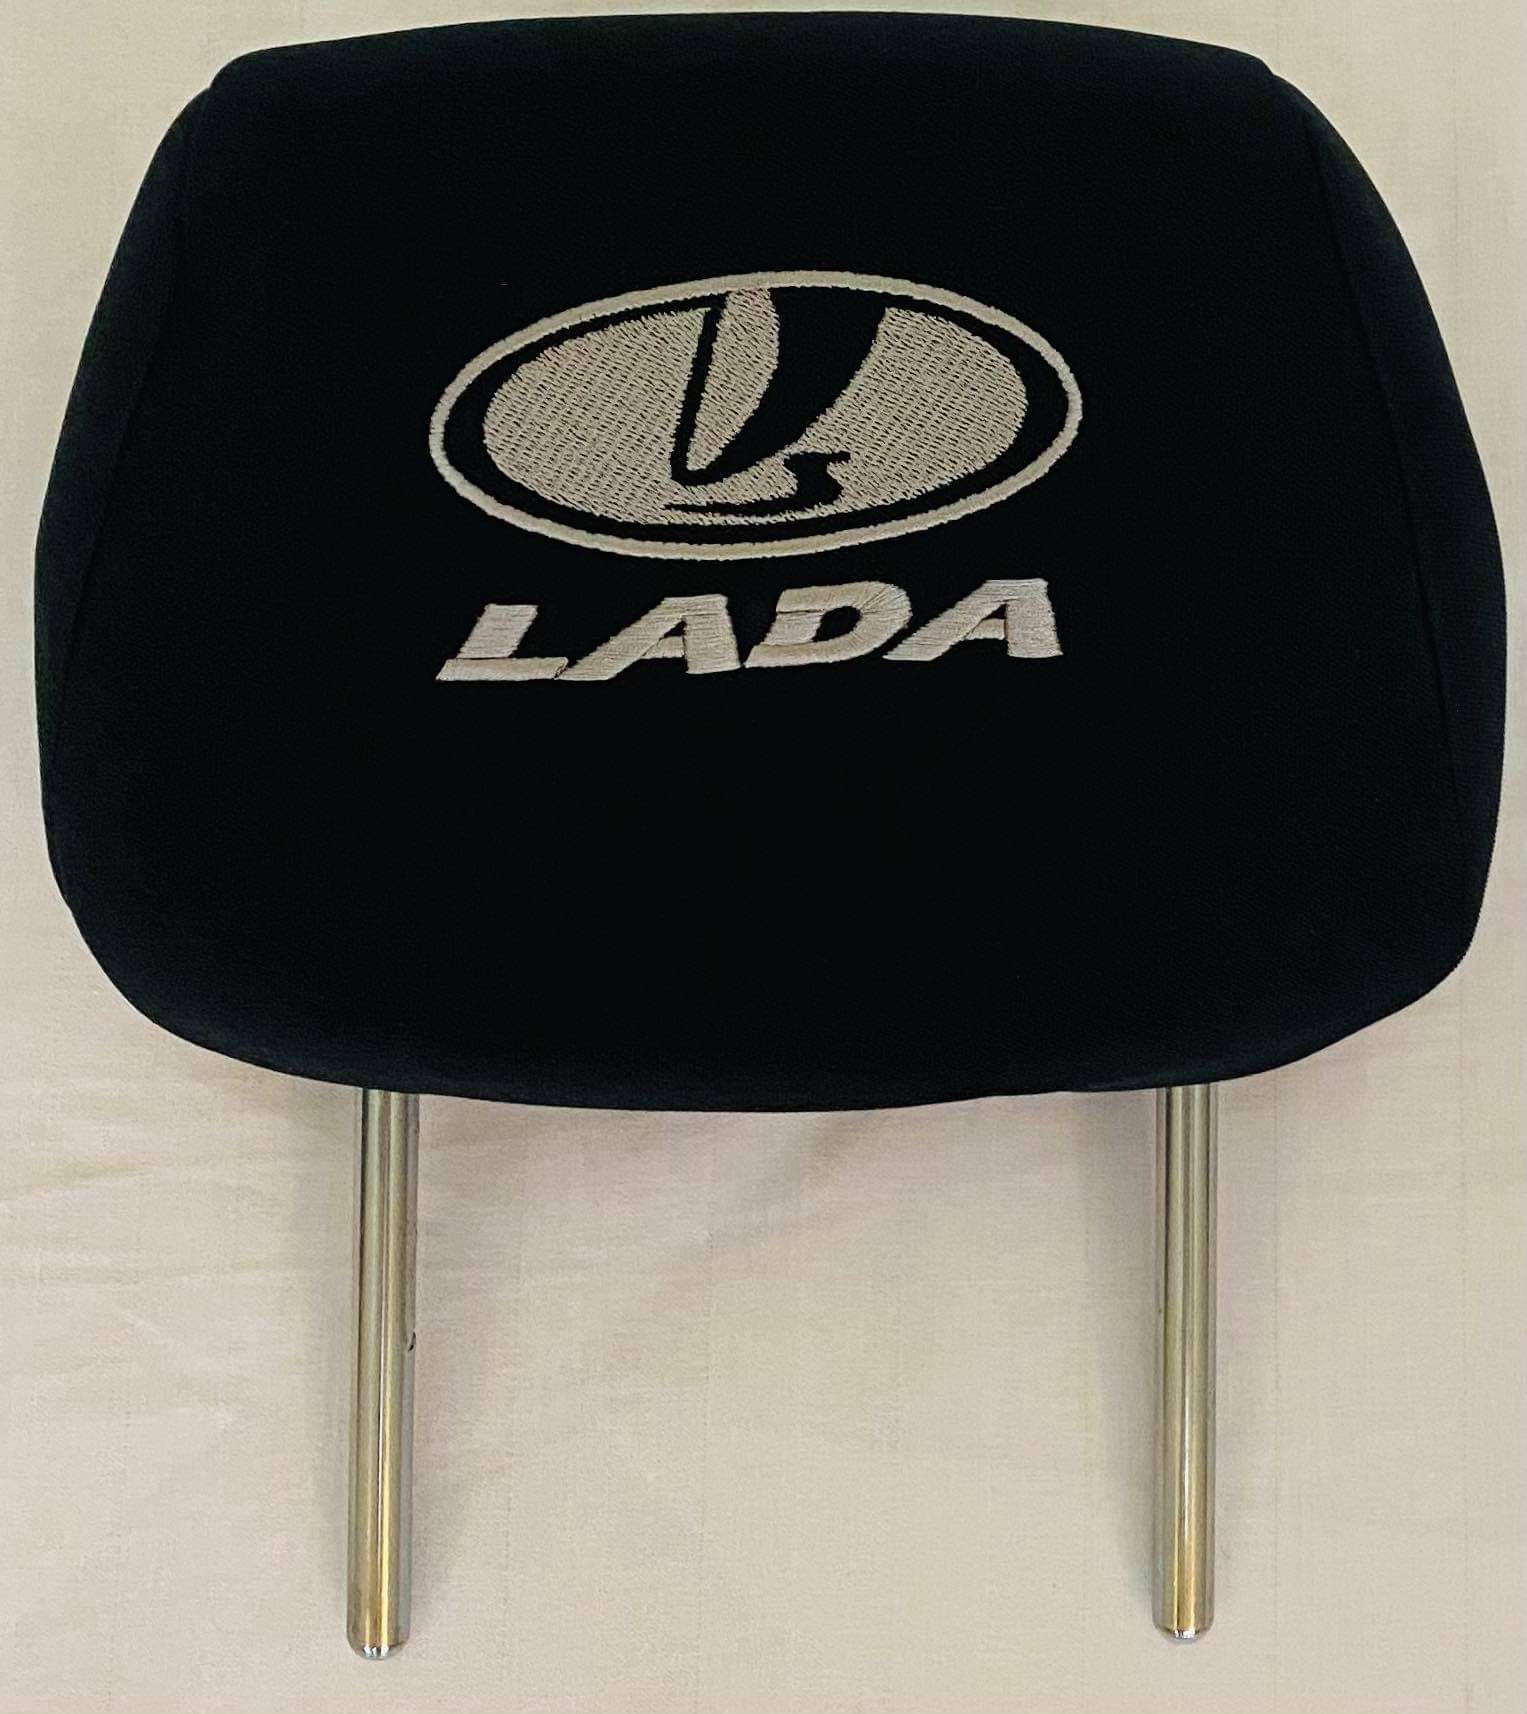 Čierne návleky na opierky hlavy s logom Lada